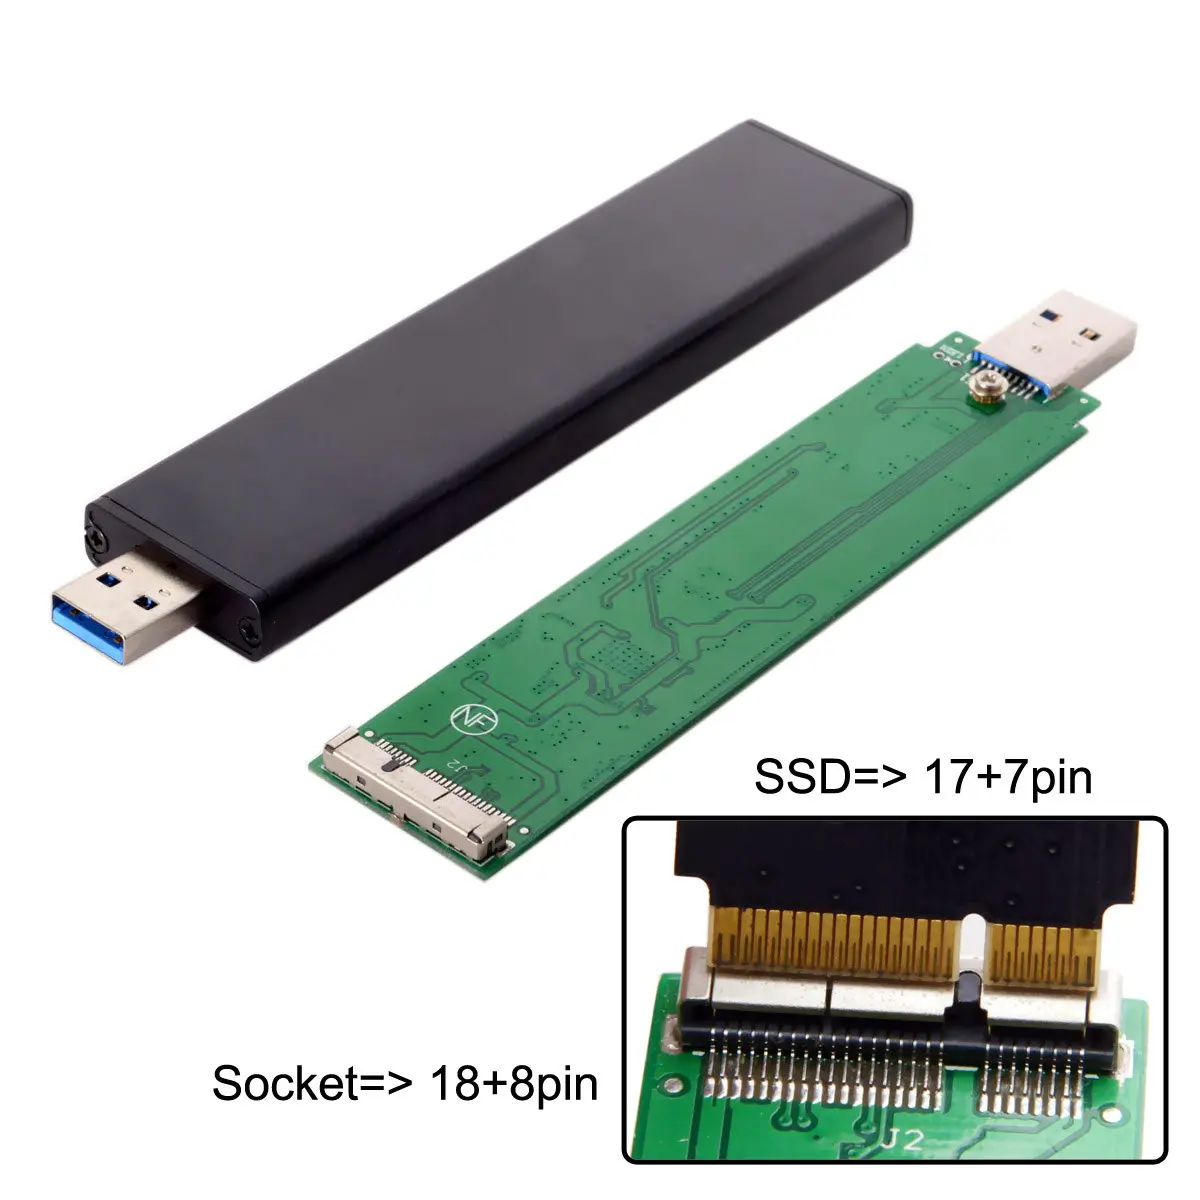 Jimier 17+7pin SSD HDD USB 3.0 Mees Kõvaketta Kassett Drive for Mac Book AIR A1465 A1466 MD223 MD224 MD231 MD213 MD232 1